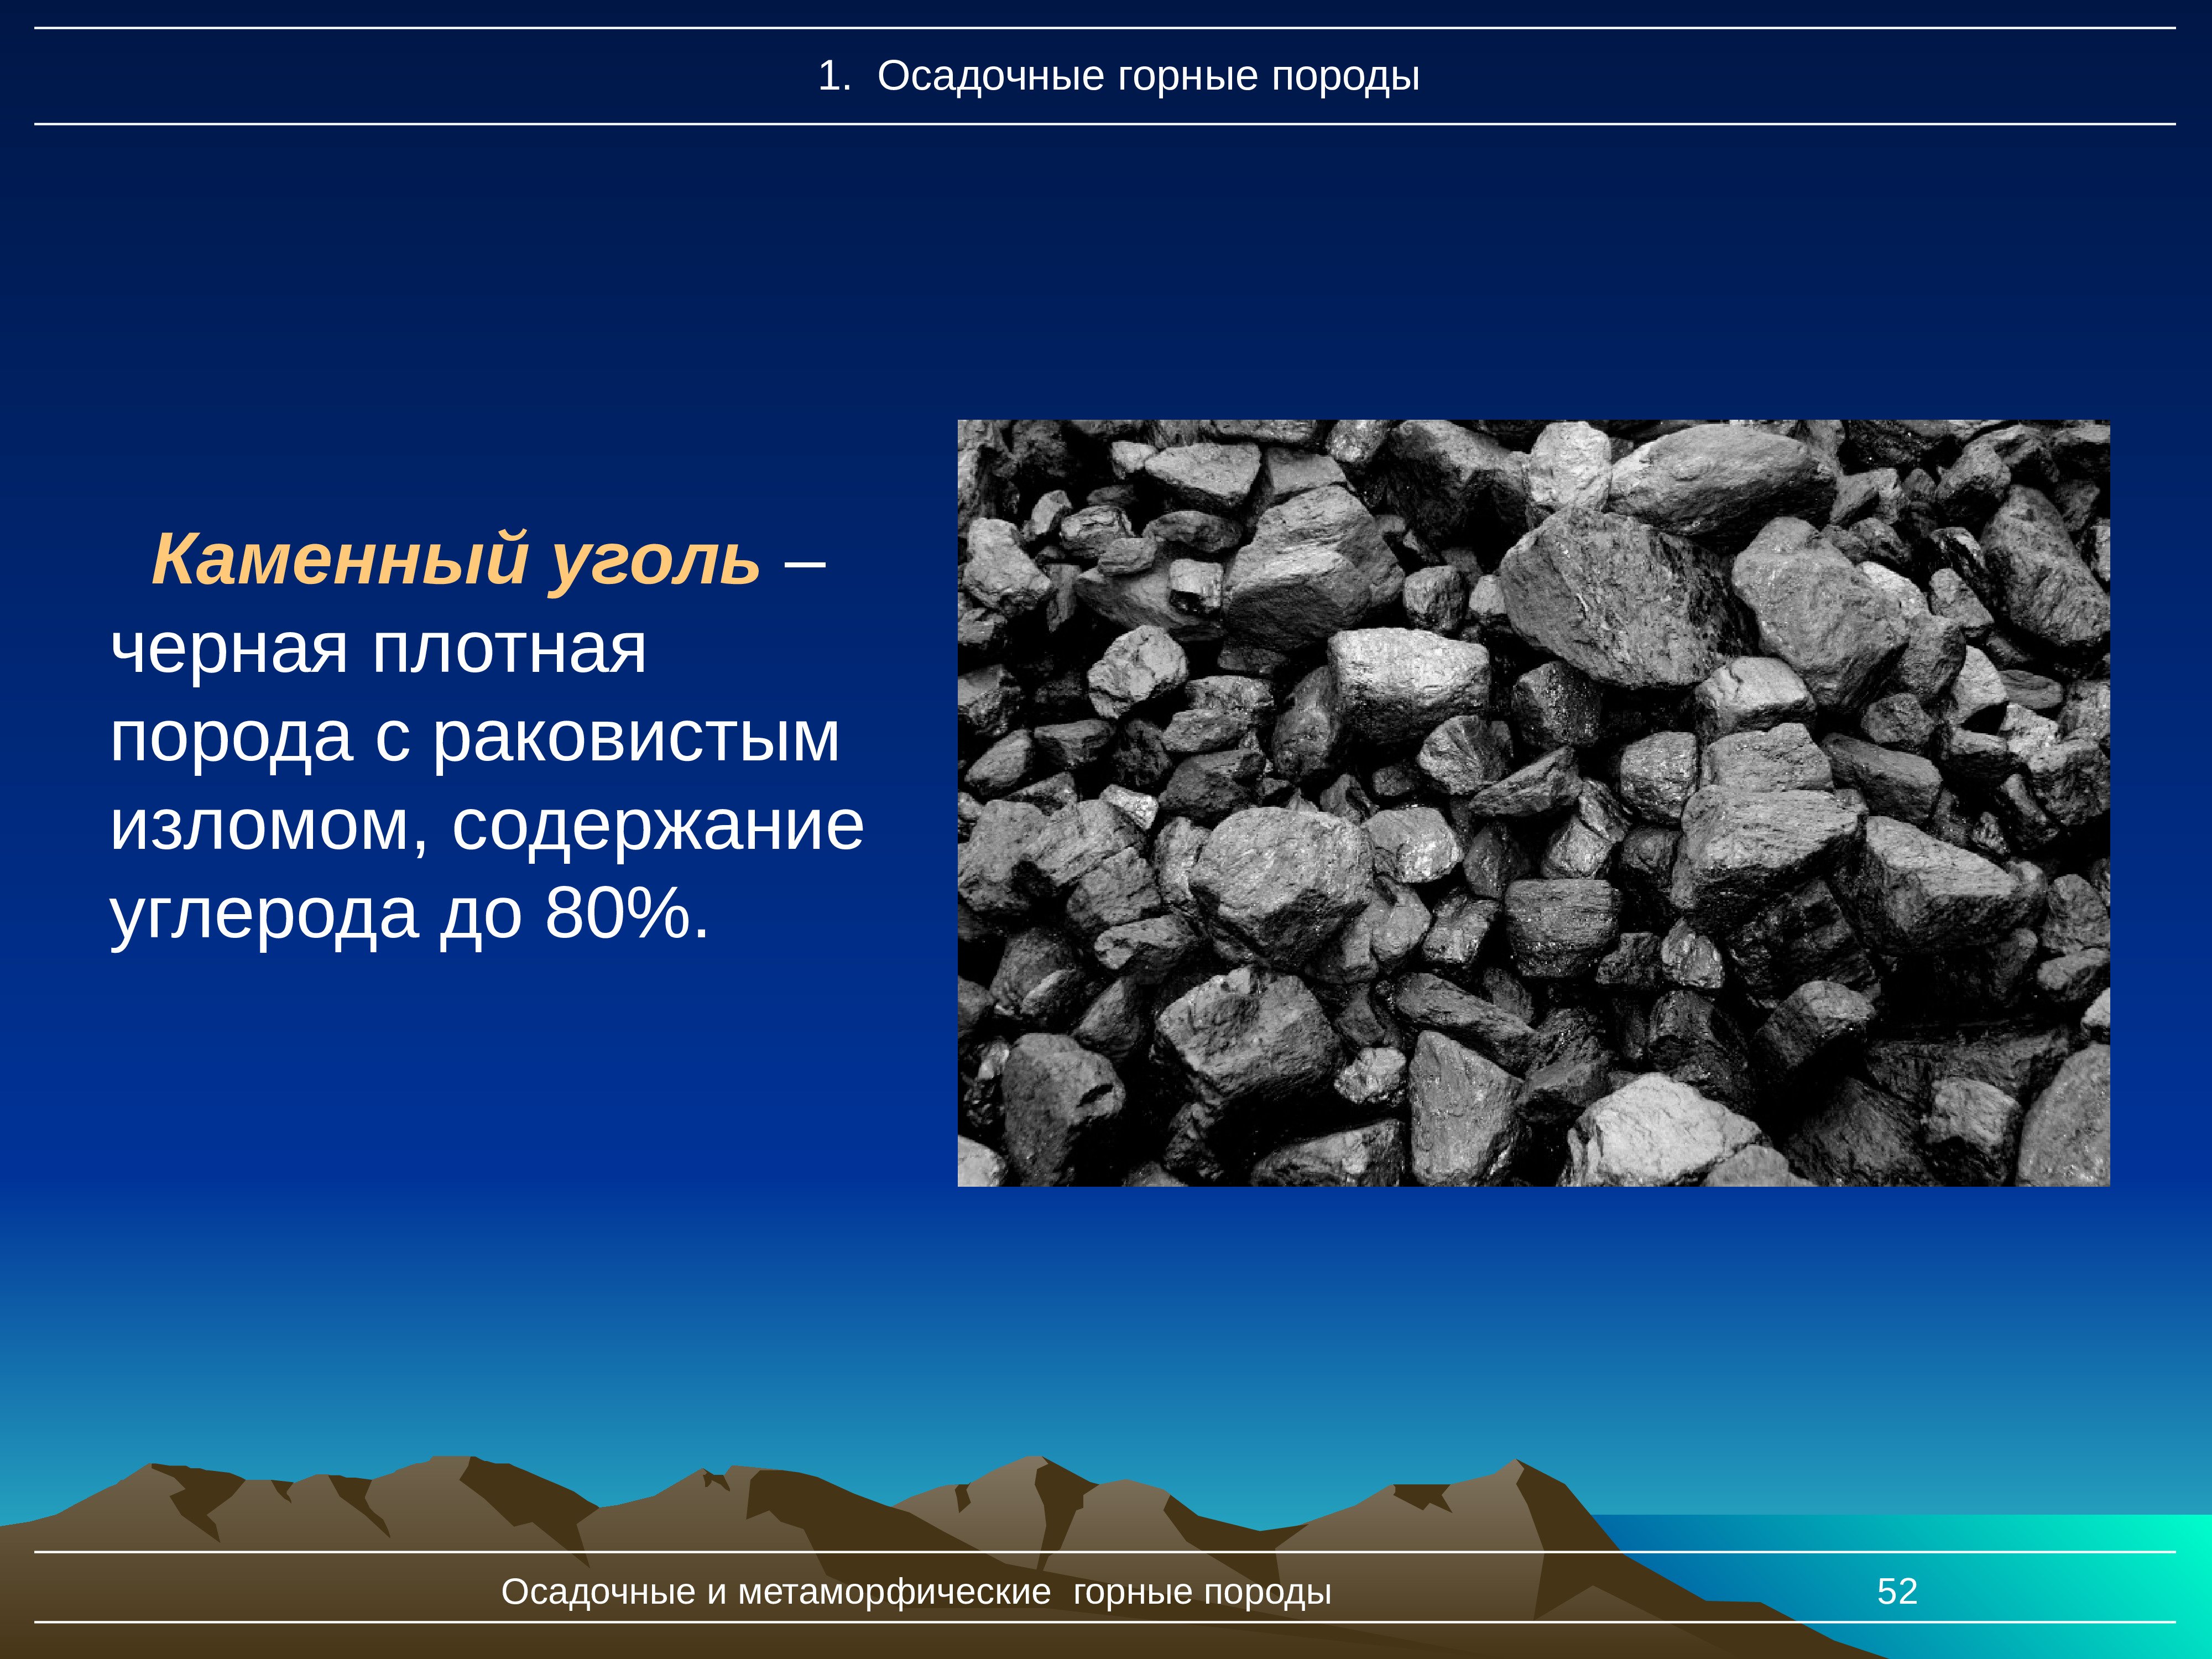 Как называется каменный уголь. Каменный уголь осадочные горные породы. Уголь Горная порода. Каменный уголь. Осадочные и метаморфические горные породы.